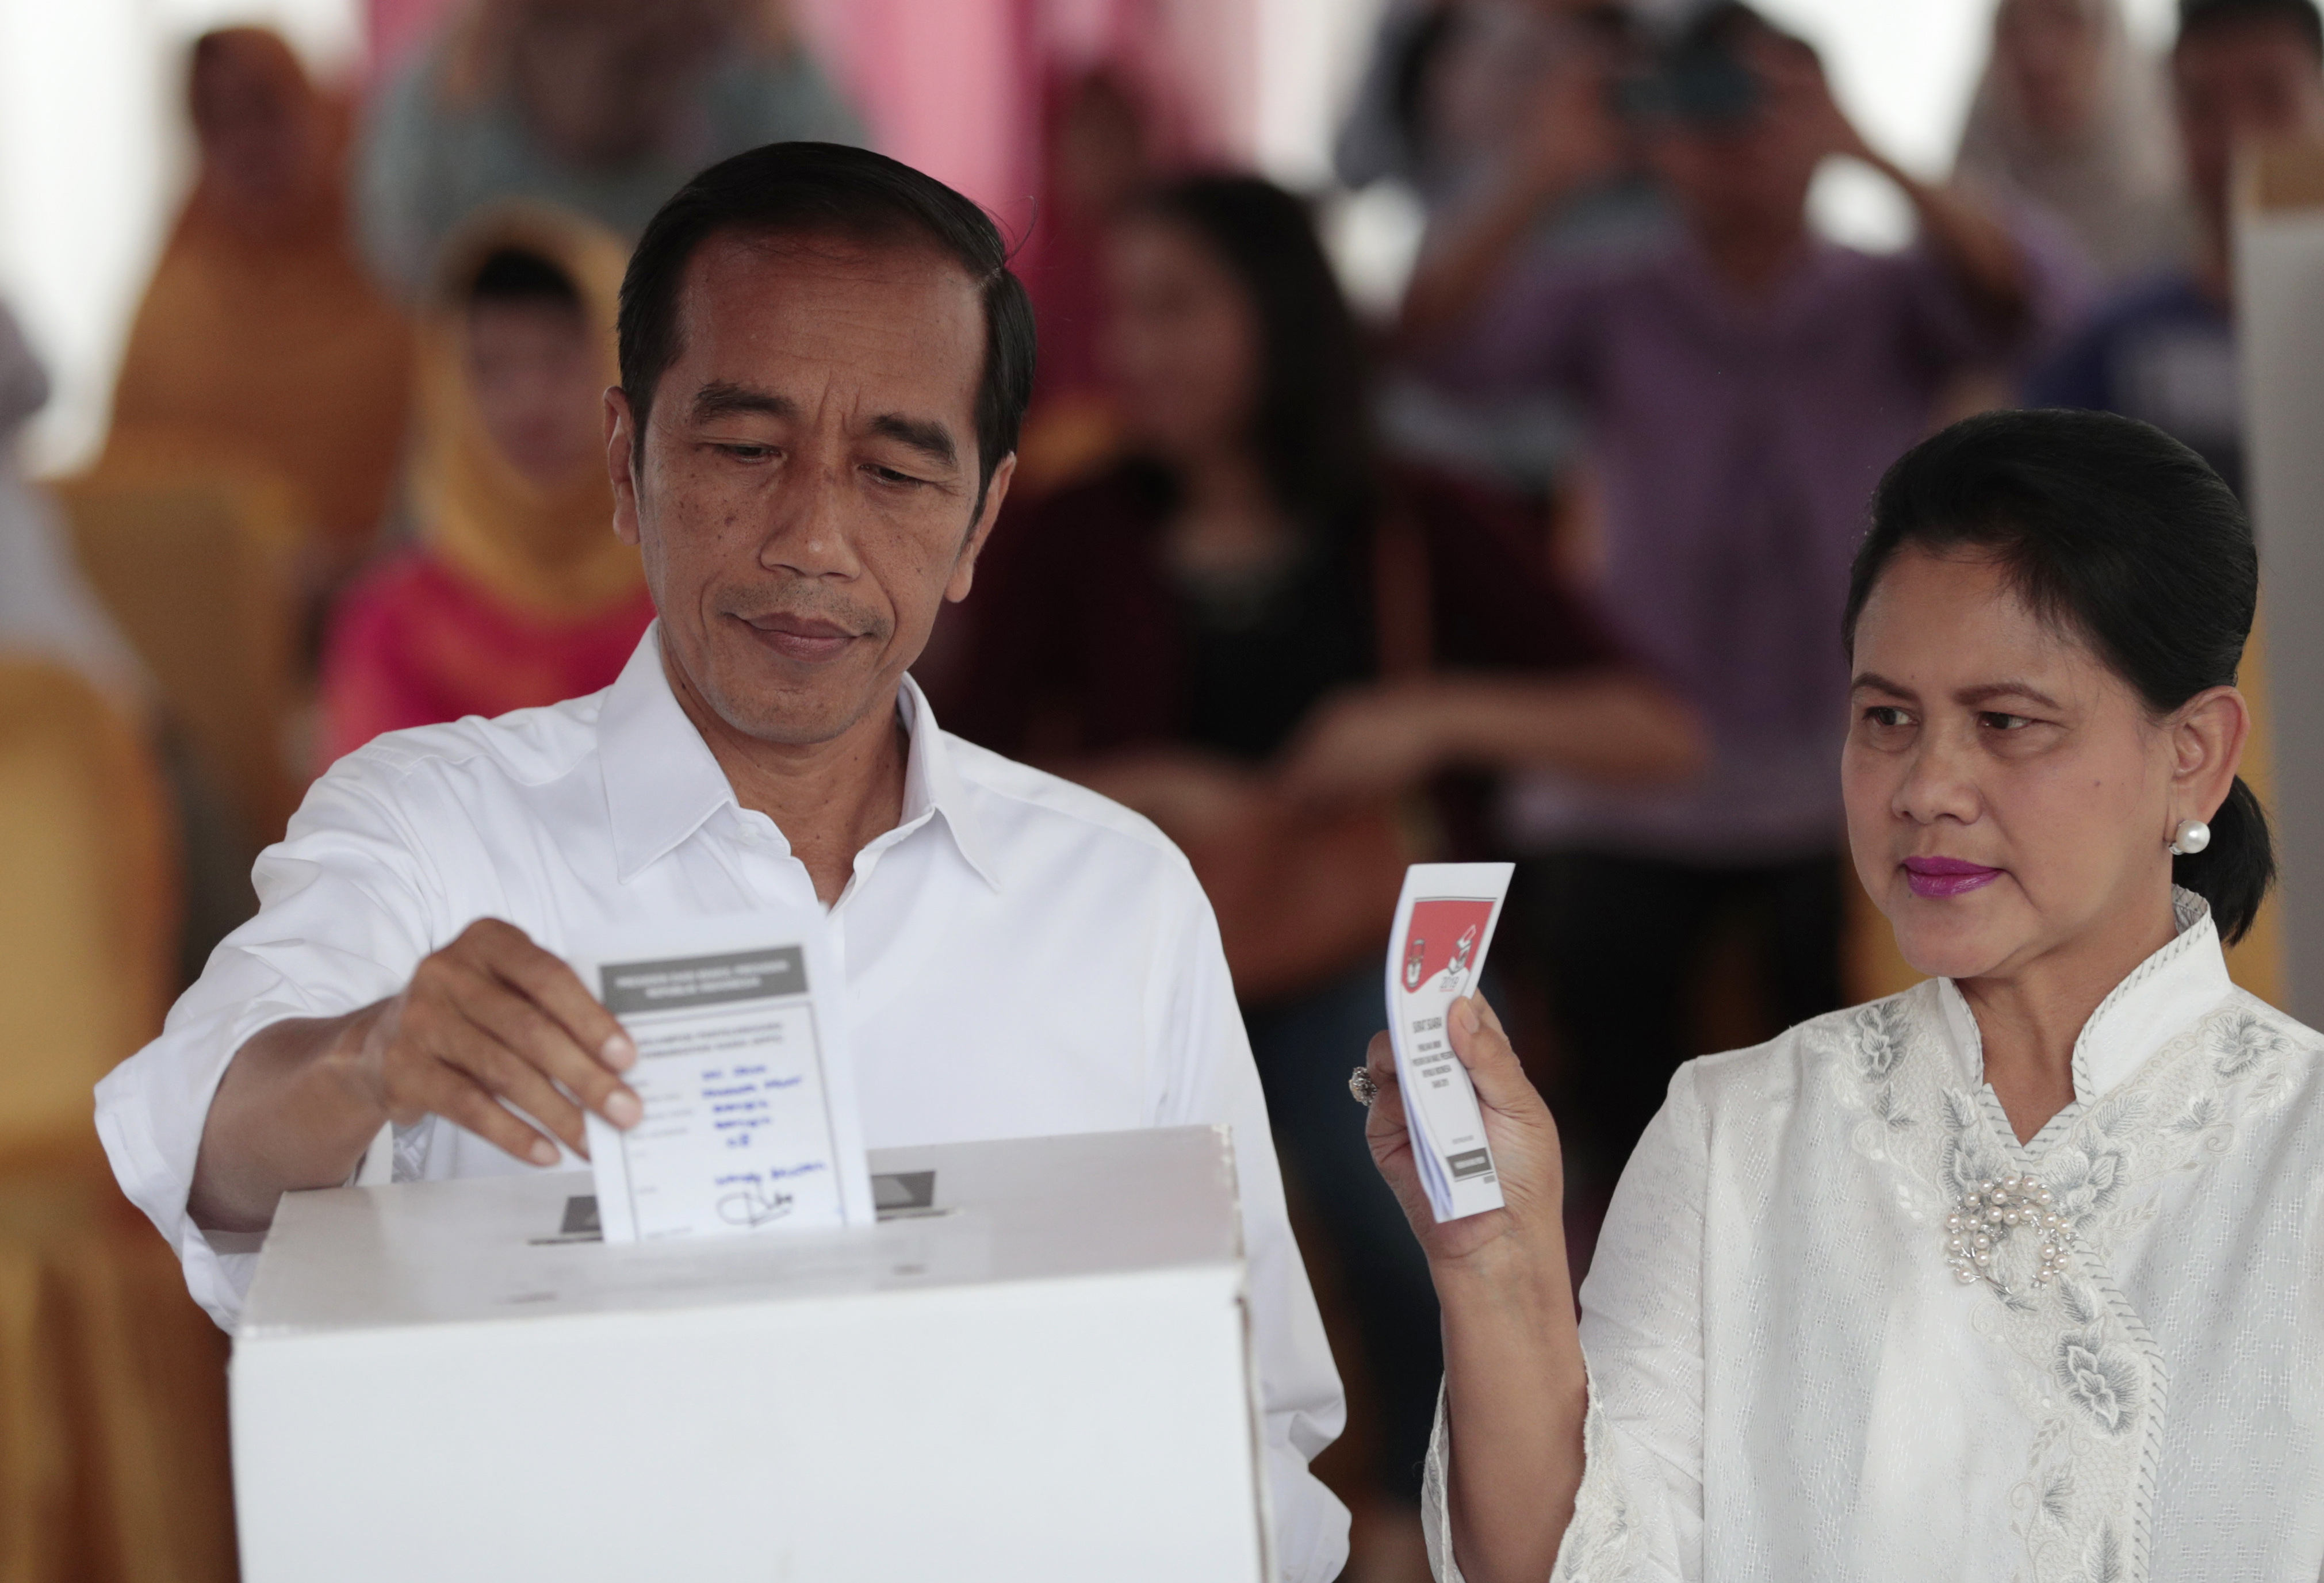 印尼茂物,印度尼西亚选举投票正式开启,这一天会同时举行总统选举